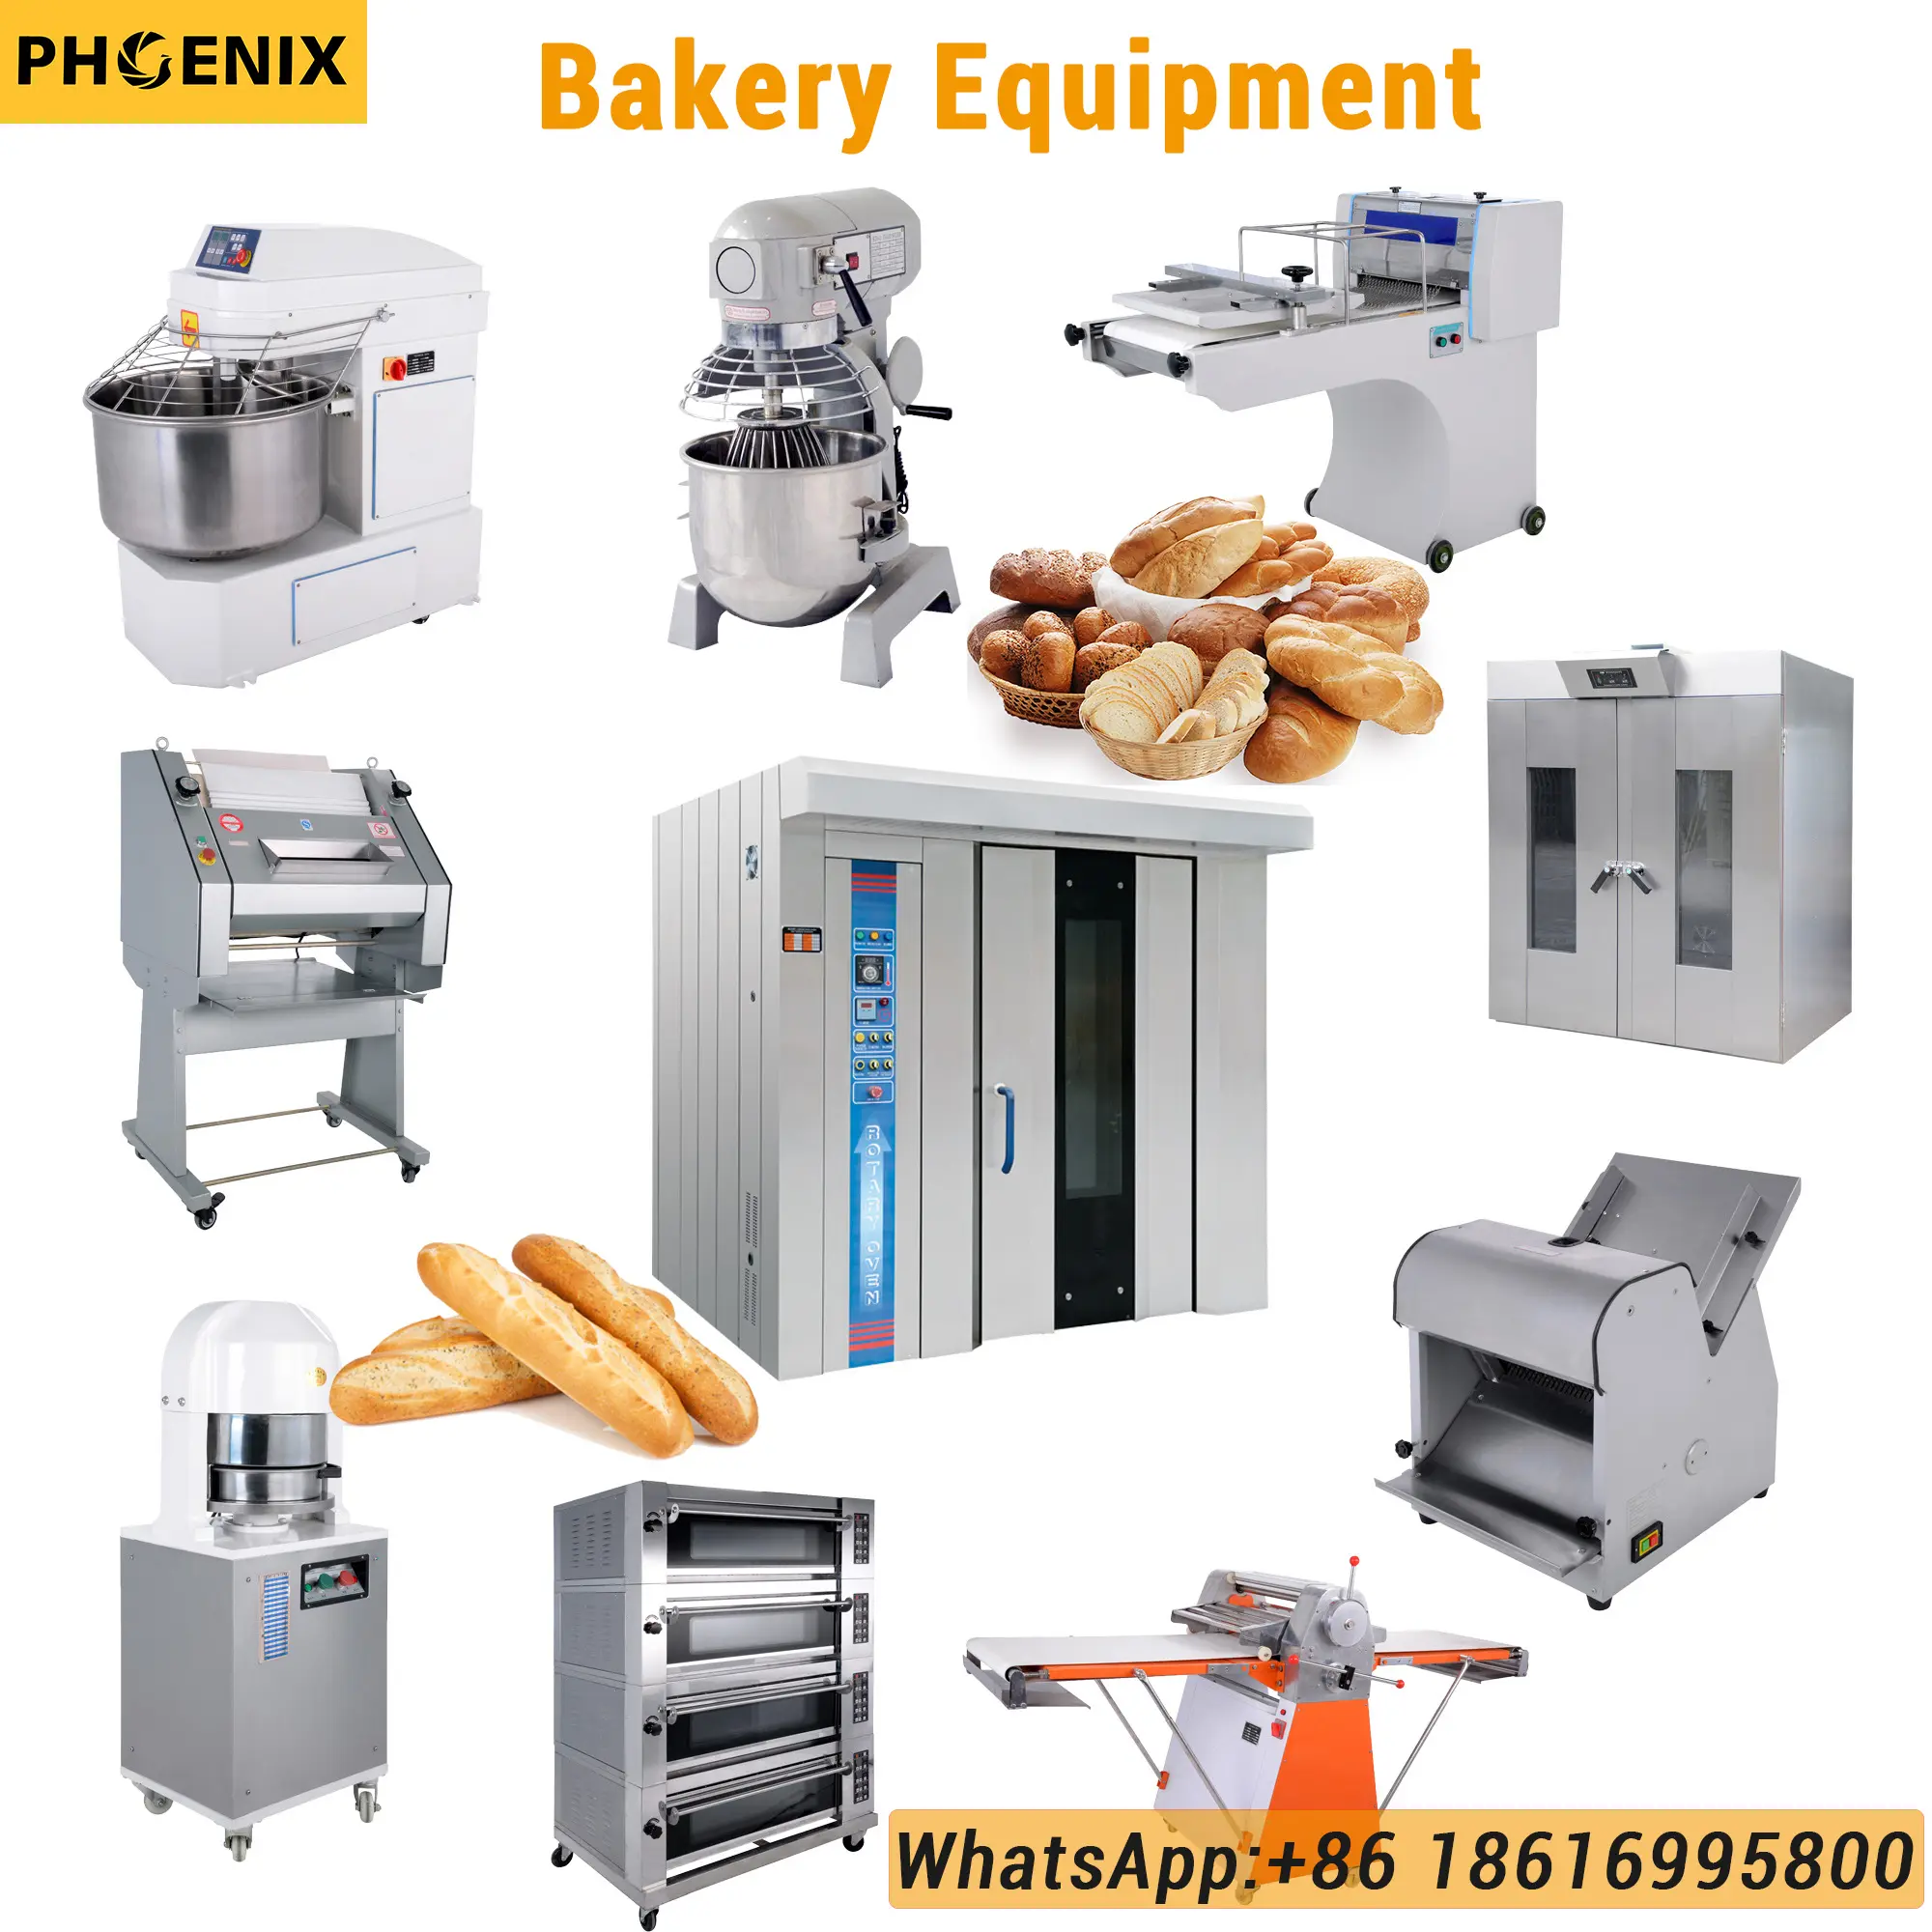 Machine de fabrication de pain avec alimentation électrique, équipement Commercial et industriel pour four et boulangerie